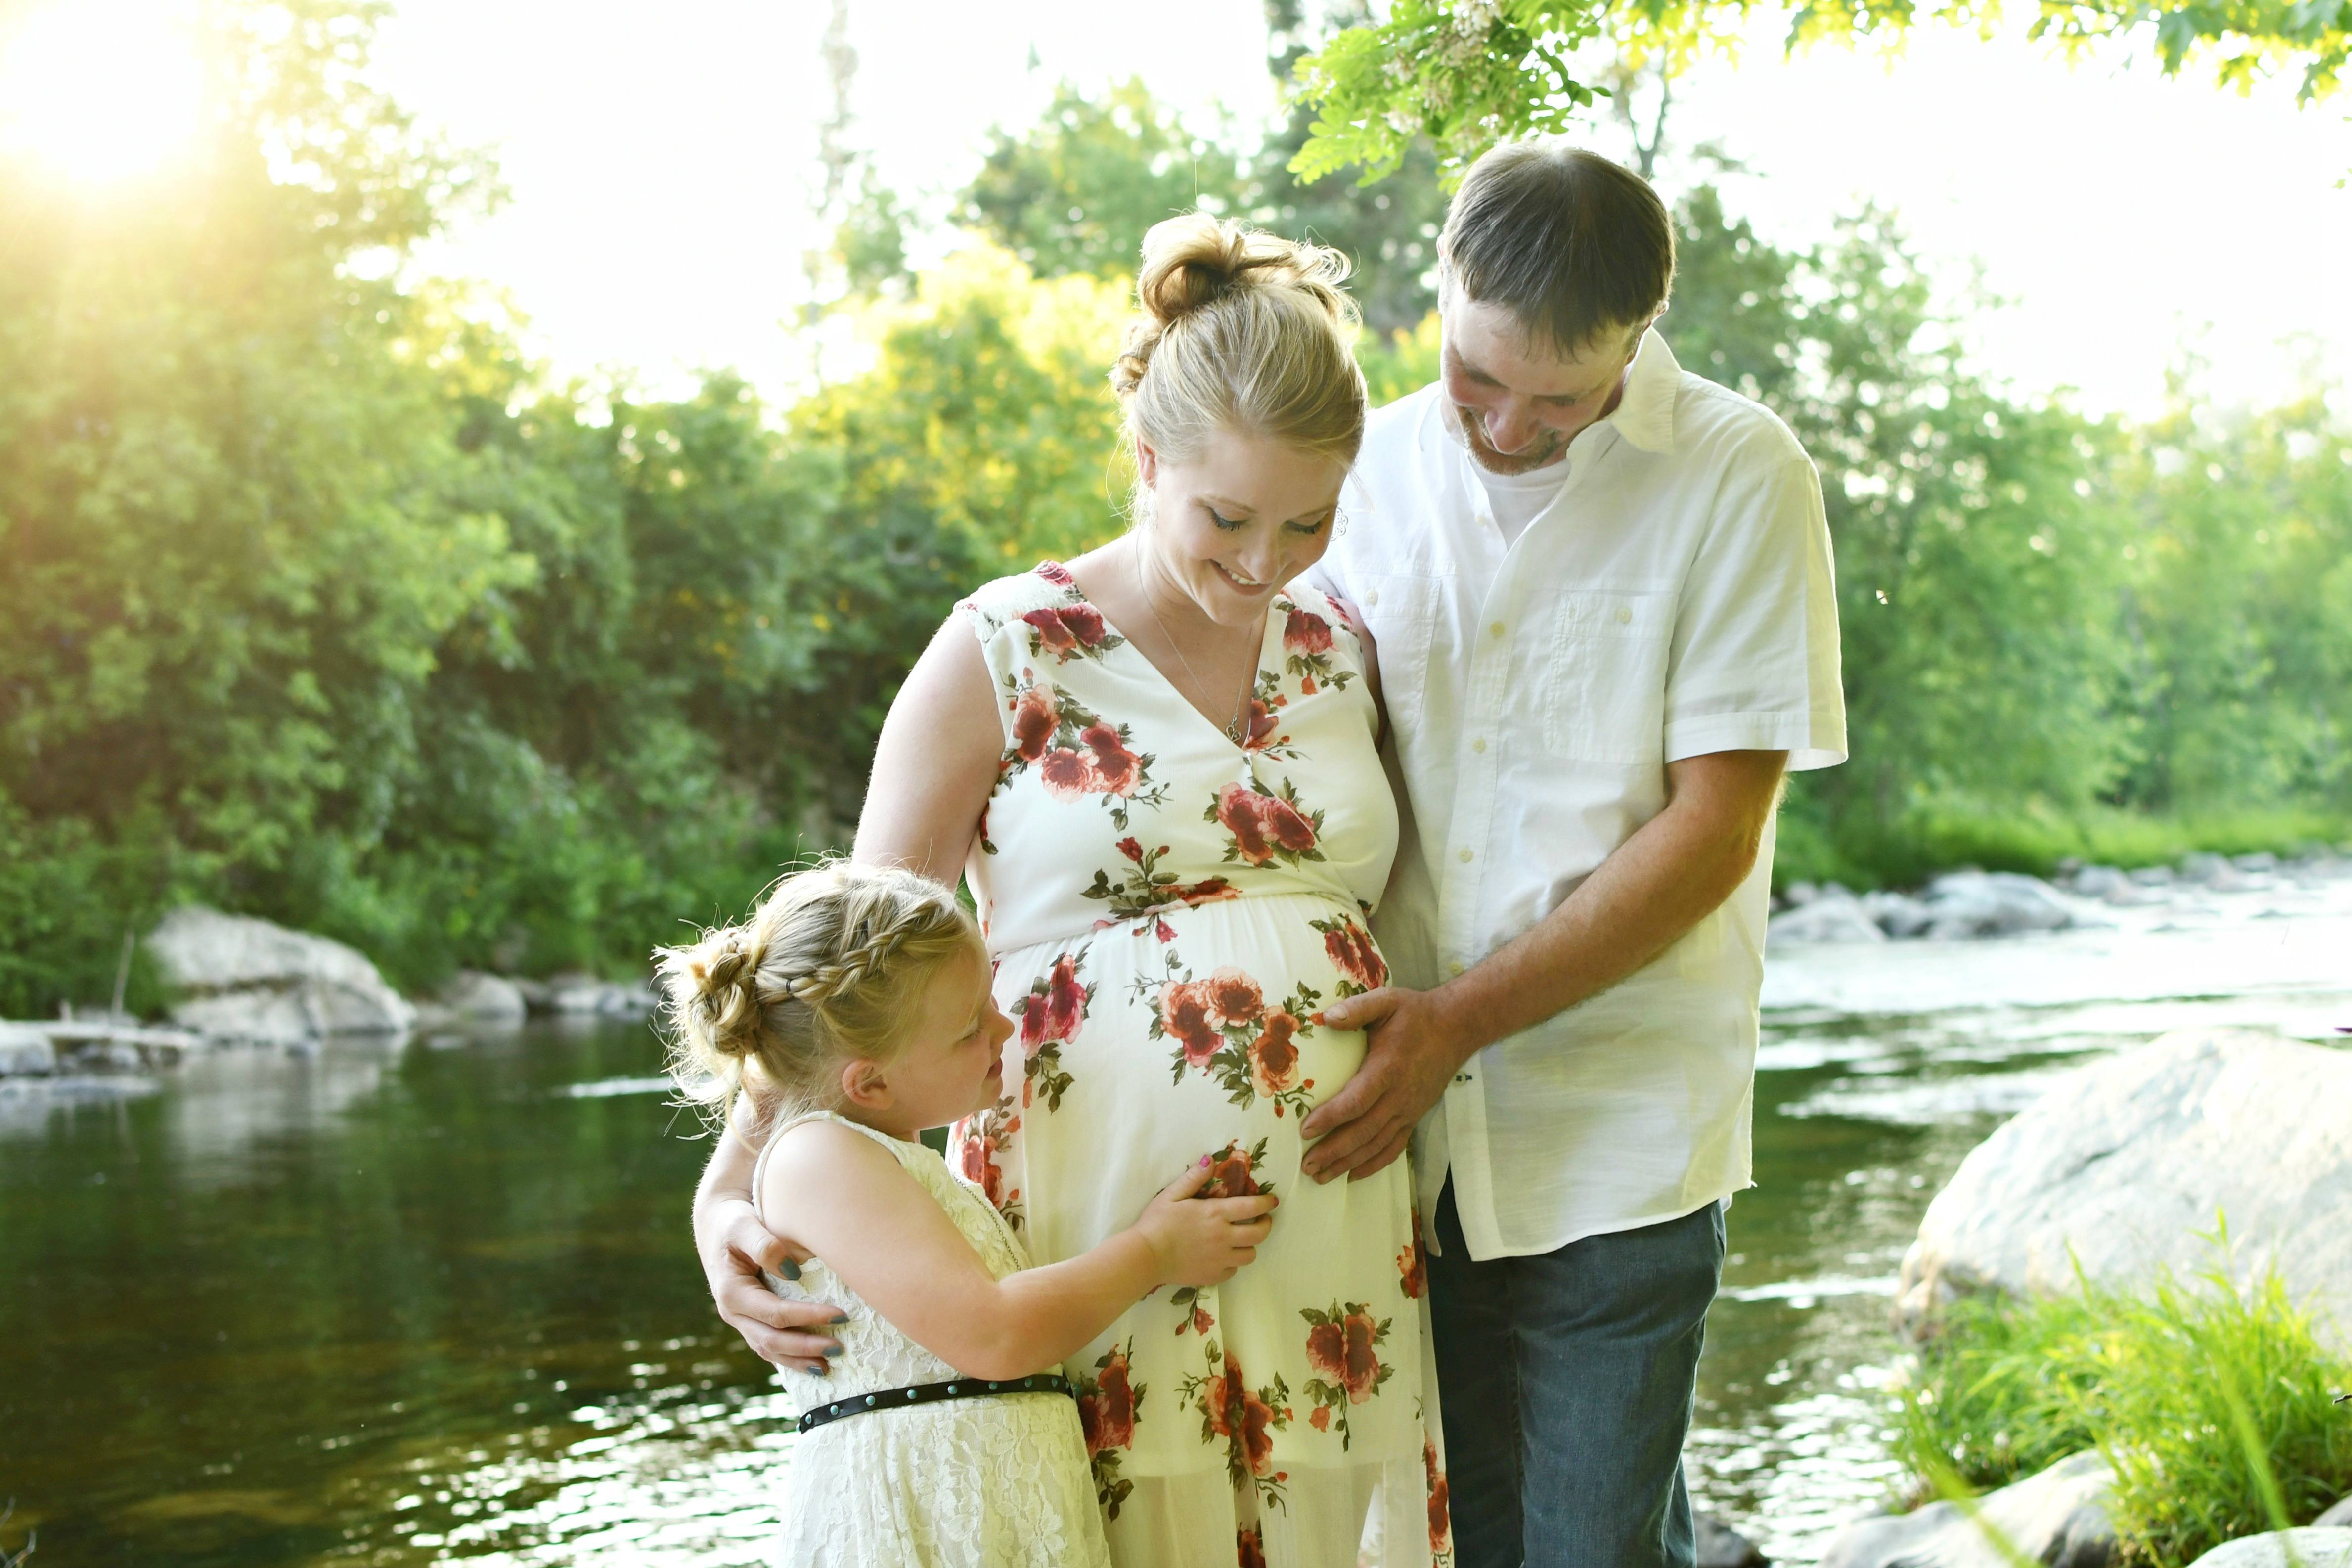 Maternity Photography 1 1 - Maternity Photography